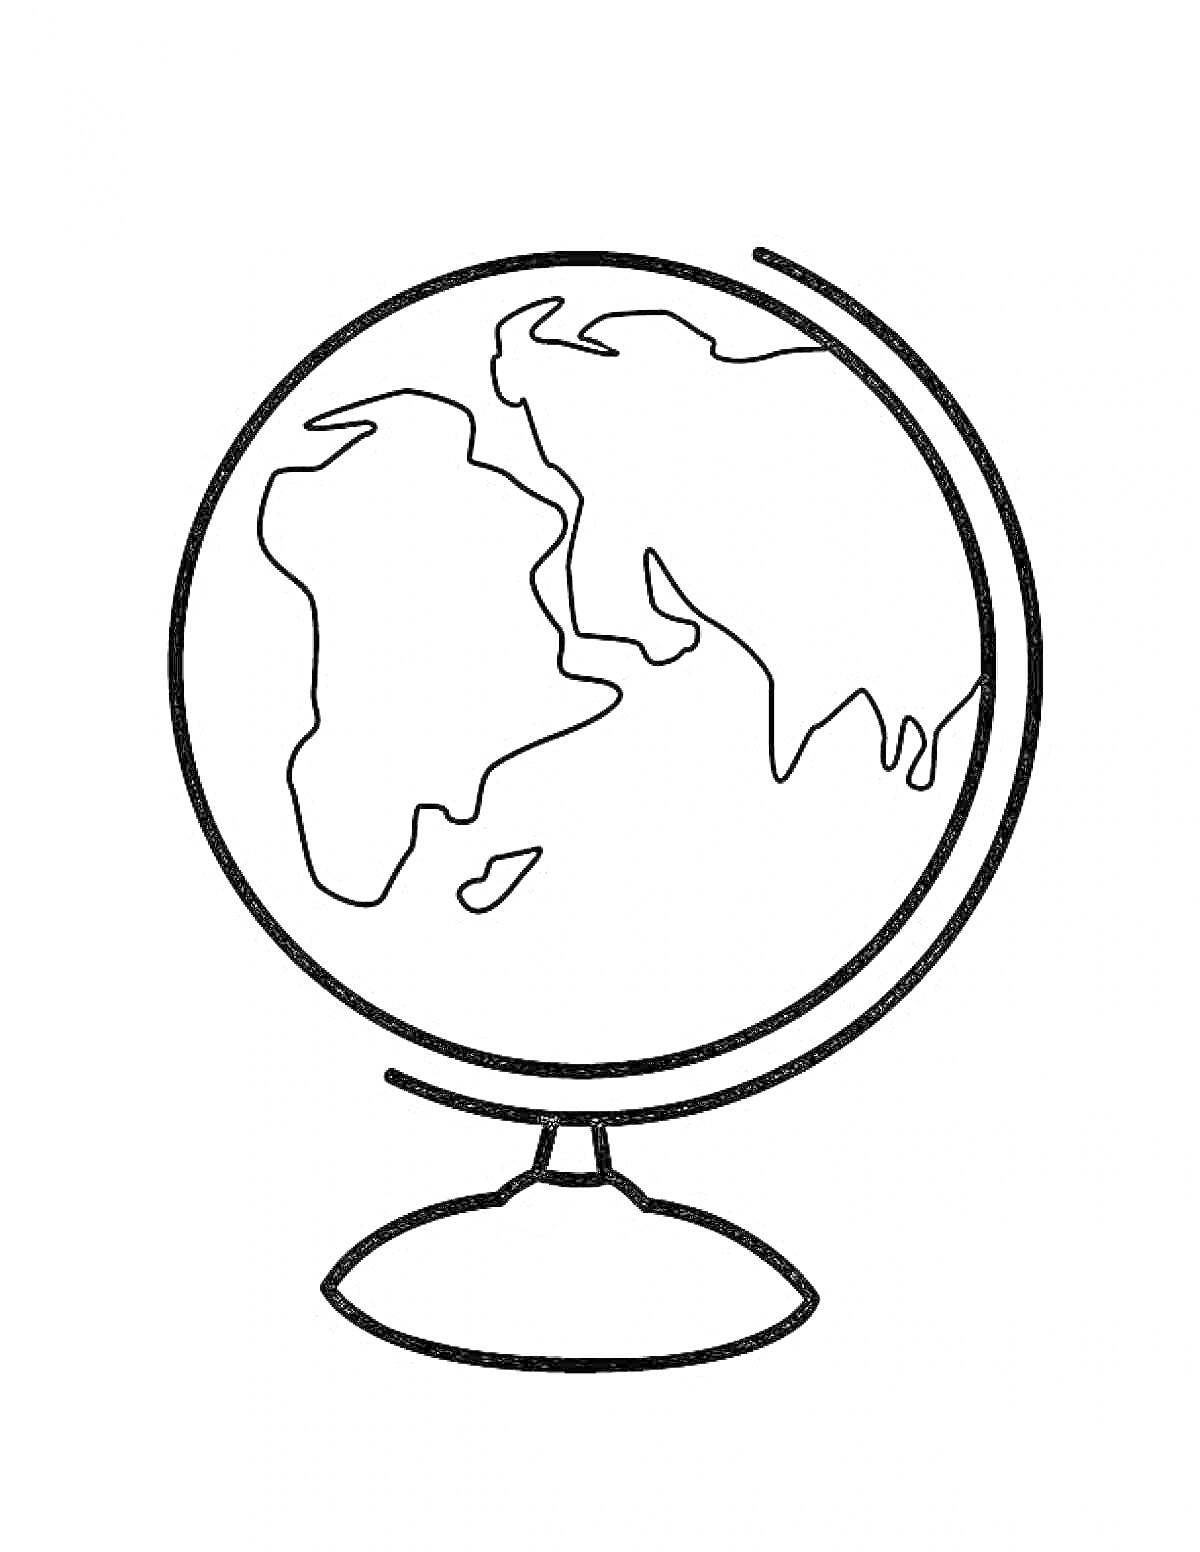 Раскраска Глобус на подставке, контурное изображение